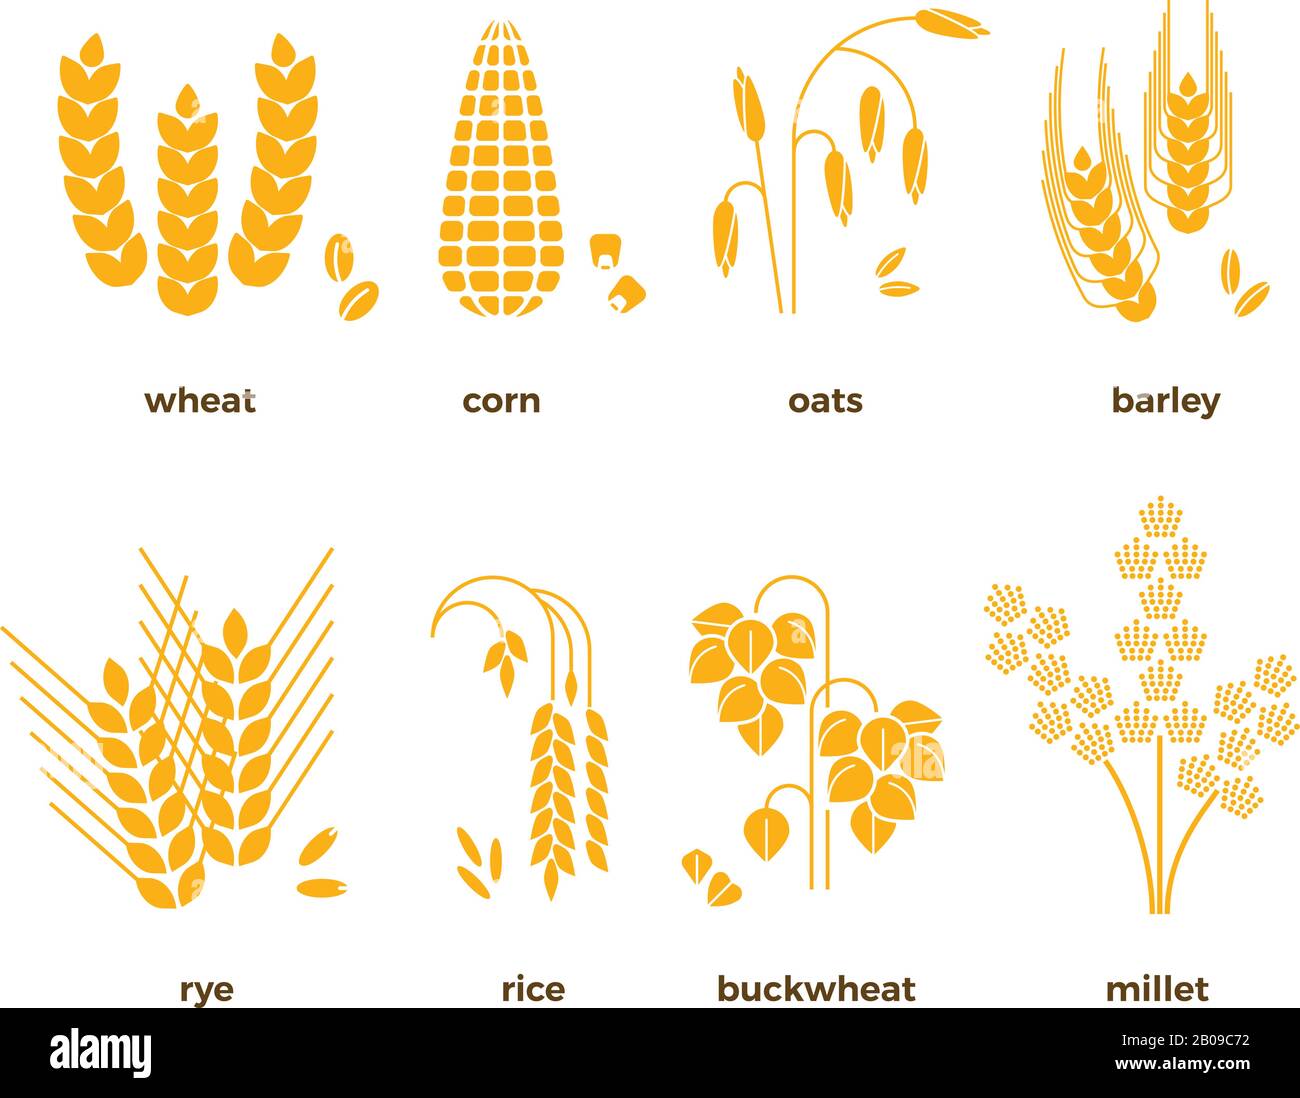 Vektorsymbole für Getreidekörner. Reis und Weizen, Mais und Hafer, Roggen und Gerste. Getreideerntesatz, Abbildung der landwirtschaftlichen Körner Stock Vektor